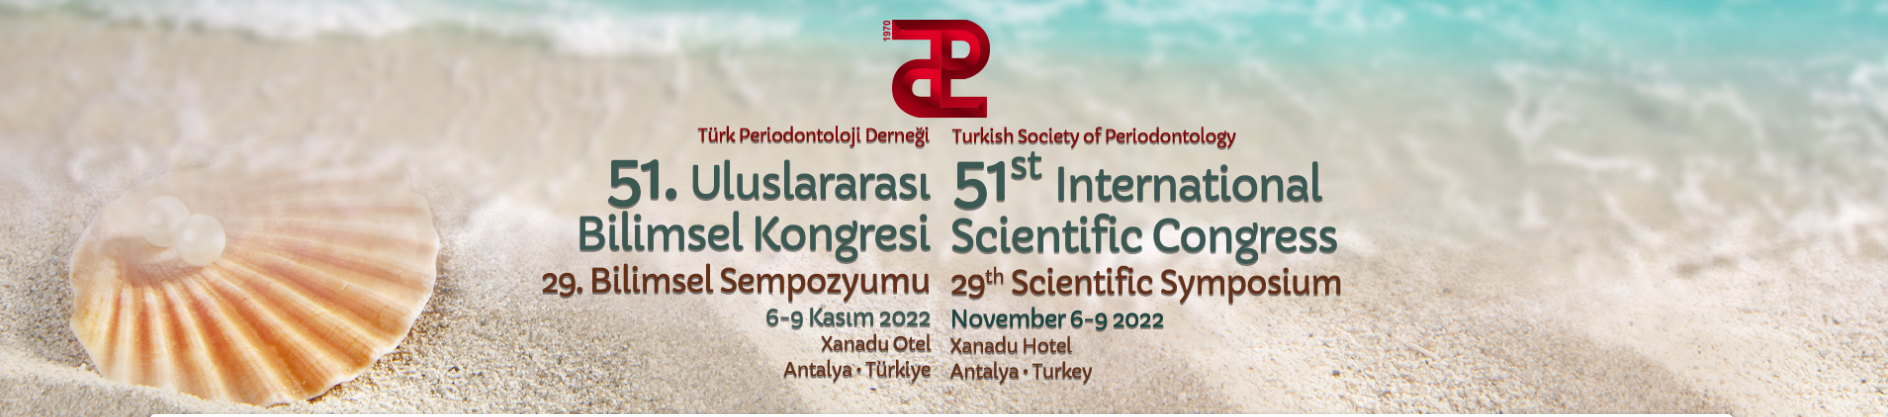 Türk Periodontoloji Derneği 51. Uluslararası Bilimsel Kongresi